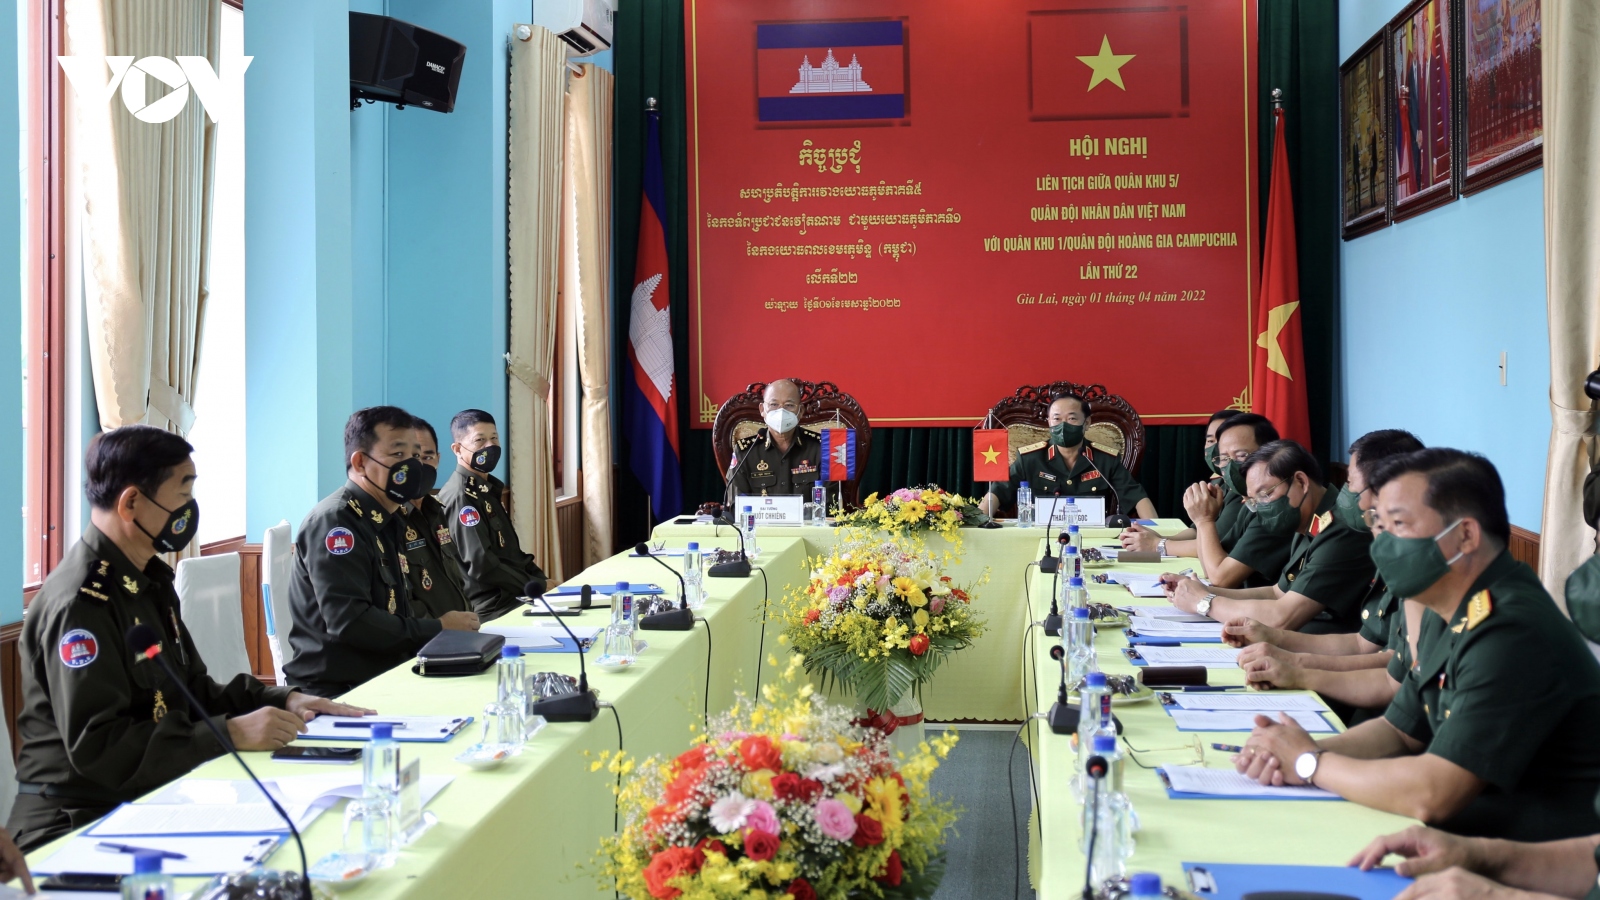 Hội nghị liên tịch giữa hai quân khu của Việt Nam và Campuchia